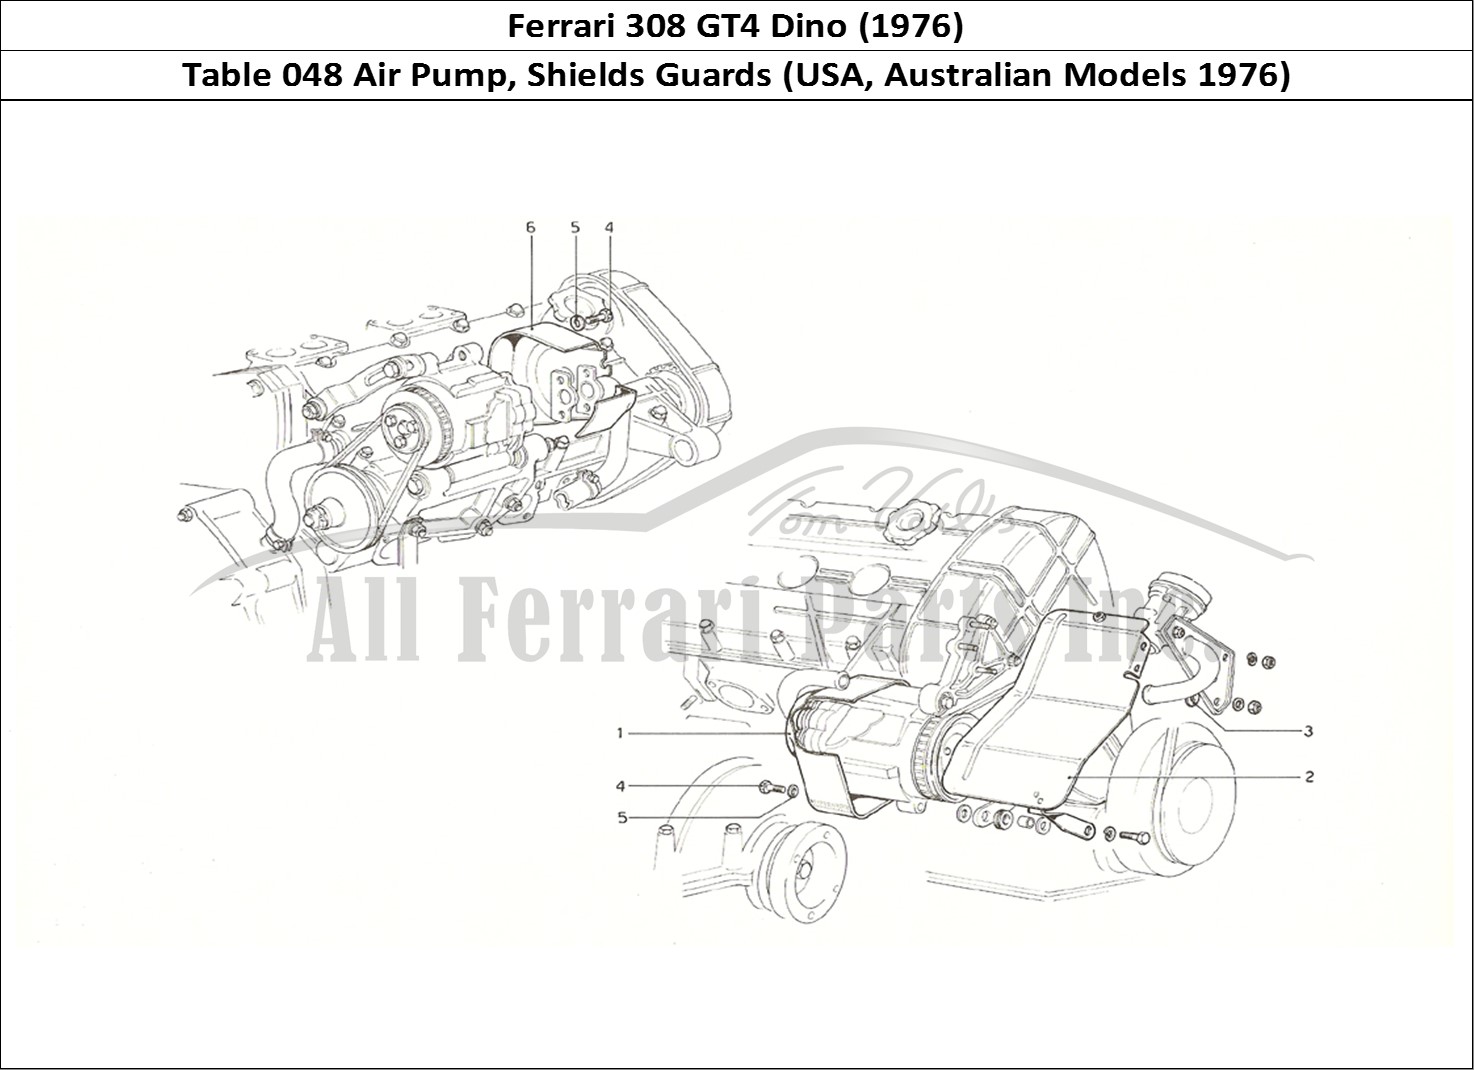 Ferrari Parts Ferrari 308 GT4 Dino (1976) Page 048 Air pump guards (US & Aus